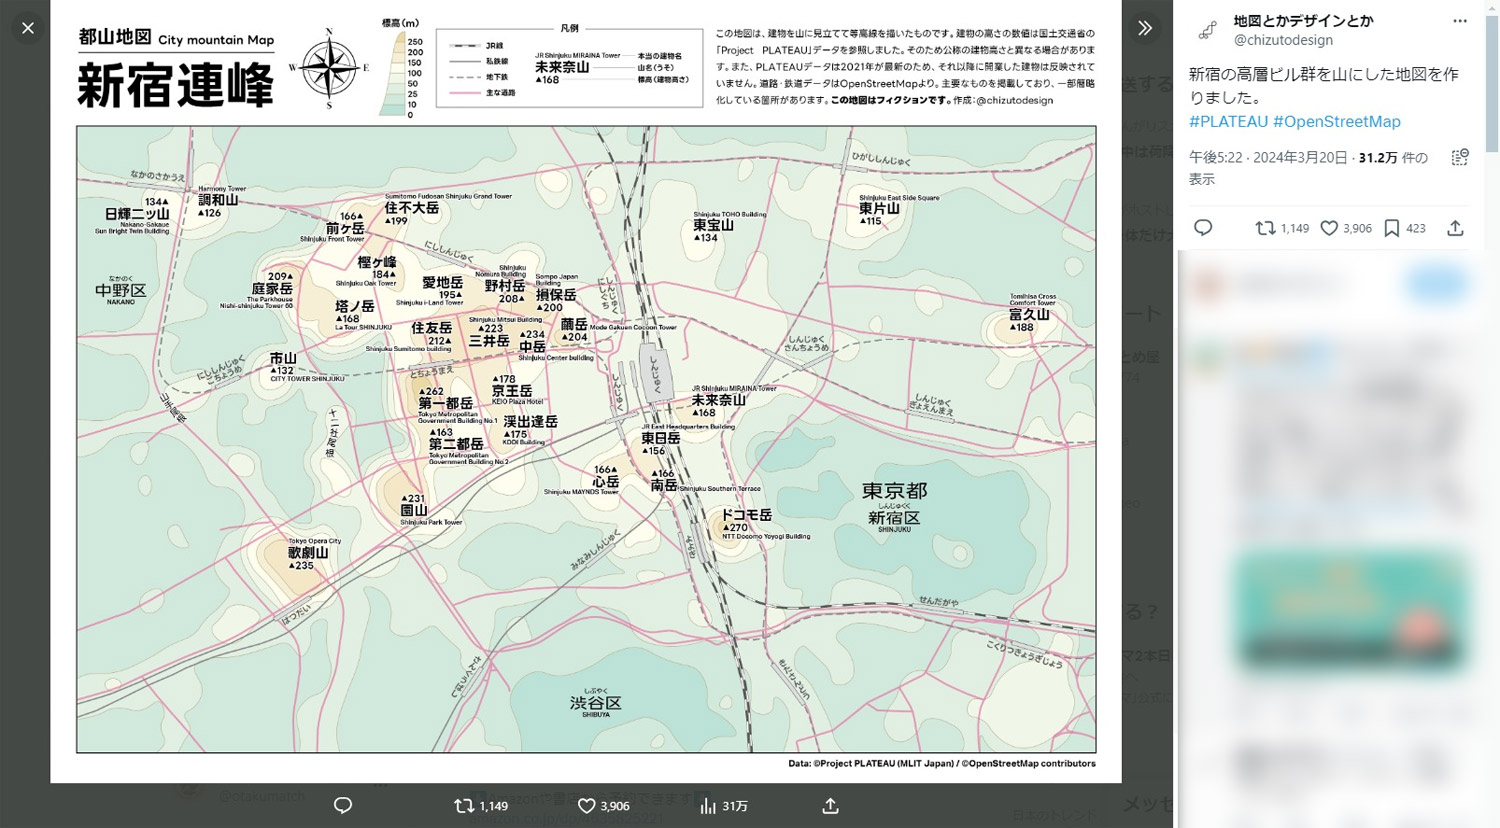 新宿駅周辺にある高層ビルを山に見立てて作成した「都山地図『新宿連峰』」